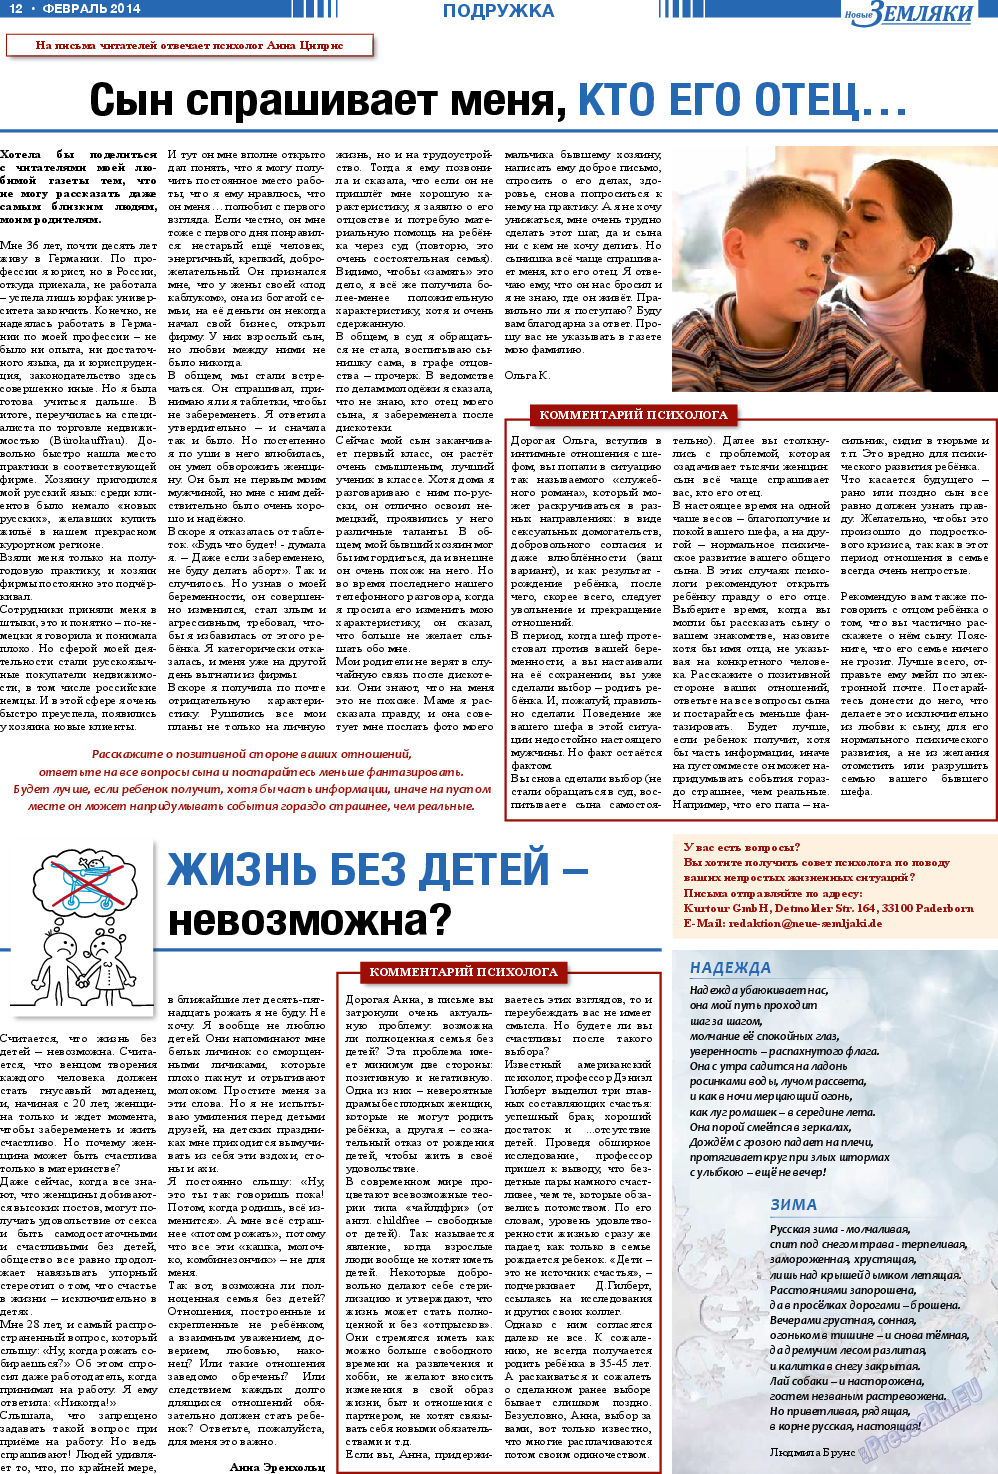 Новые Земляки, газета. 2014 №2 стр.12